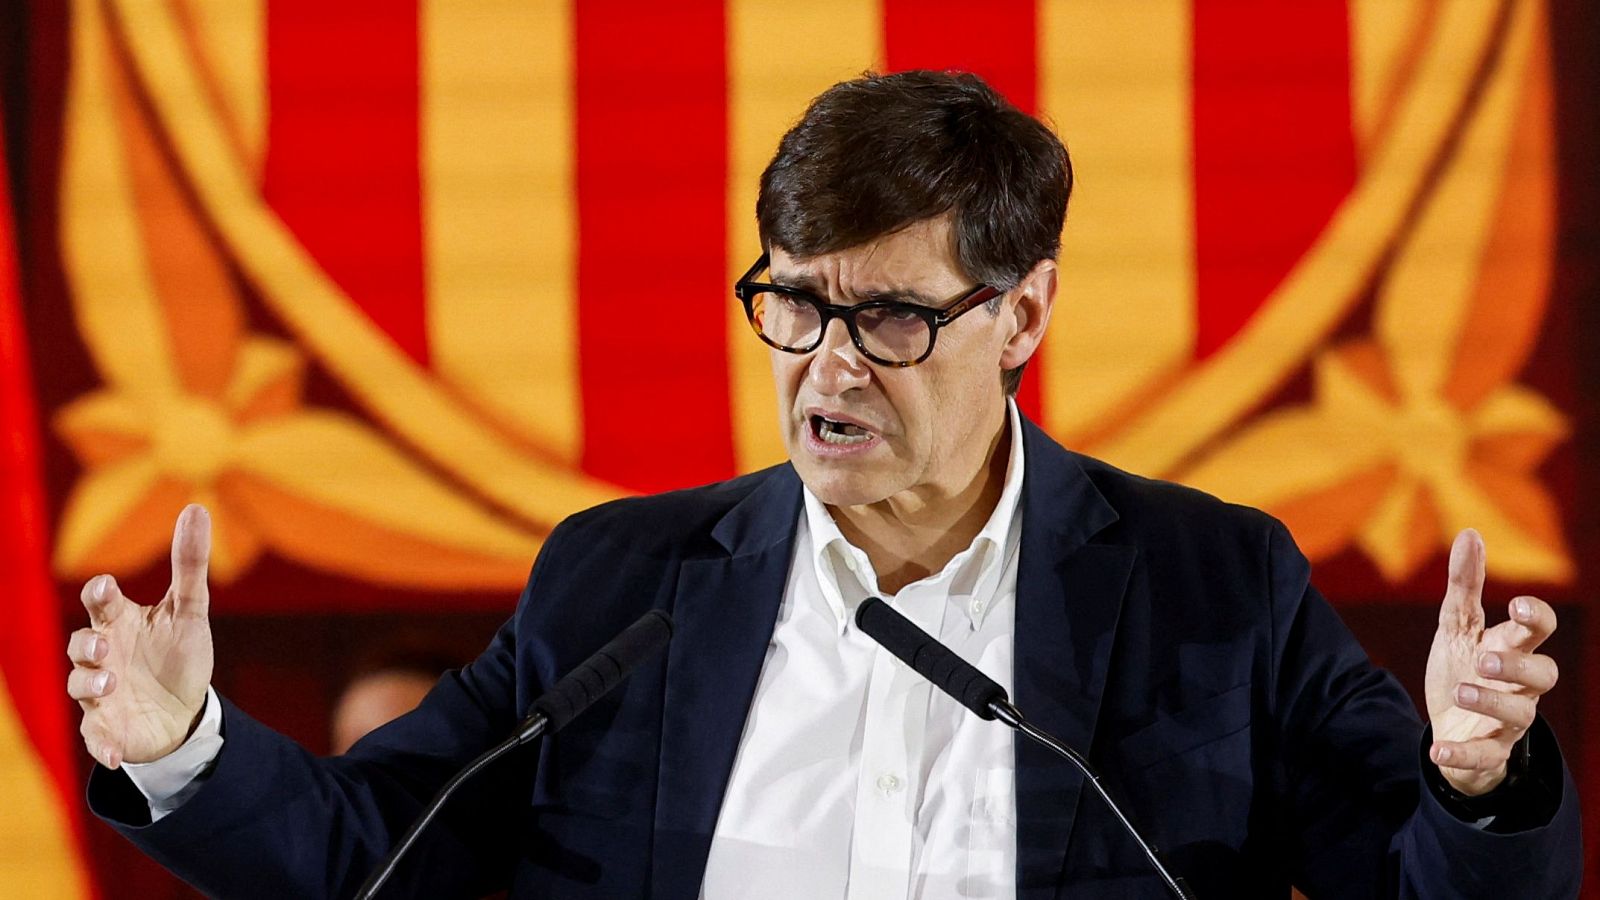 Elecciones catalanas: Illa descarta ahora un acuerdo con Junts+: "No habrá pacto, Puigdemont es bloqueo"